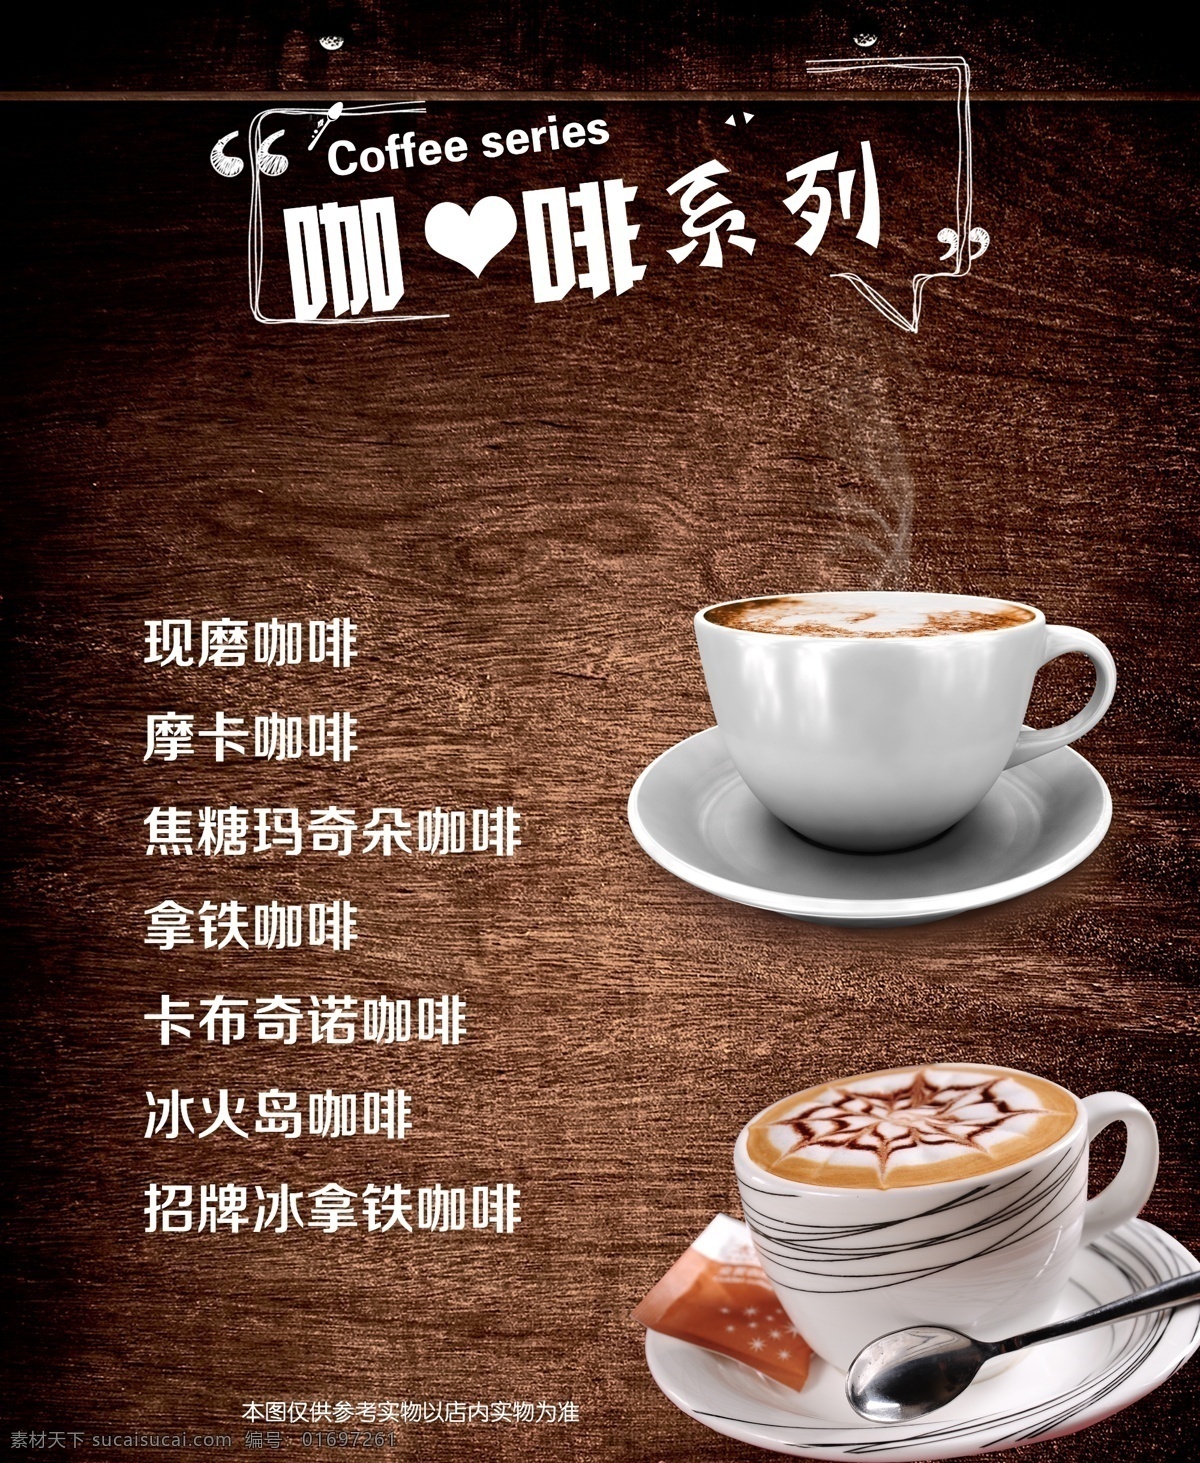 咖啡系列 咖啡 饮品 咖啡图片 灯箱 价目表 背景 霞霞制作 室内广告设计